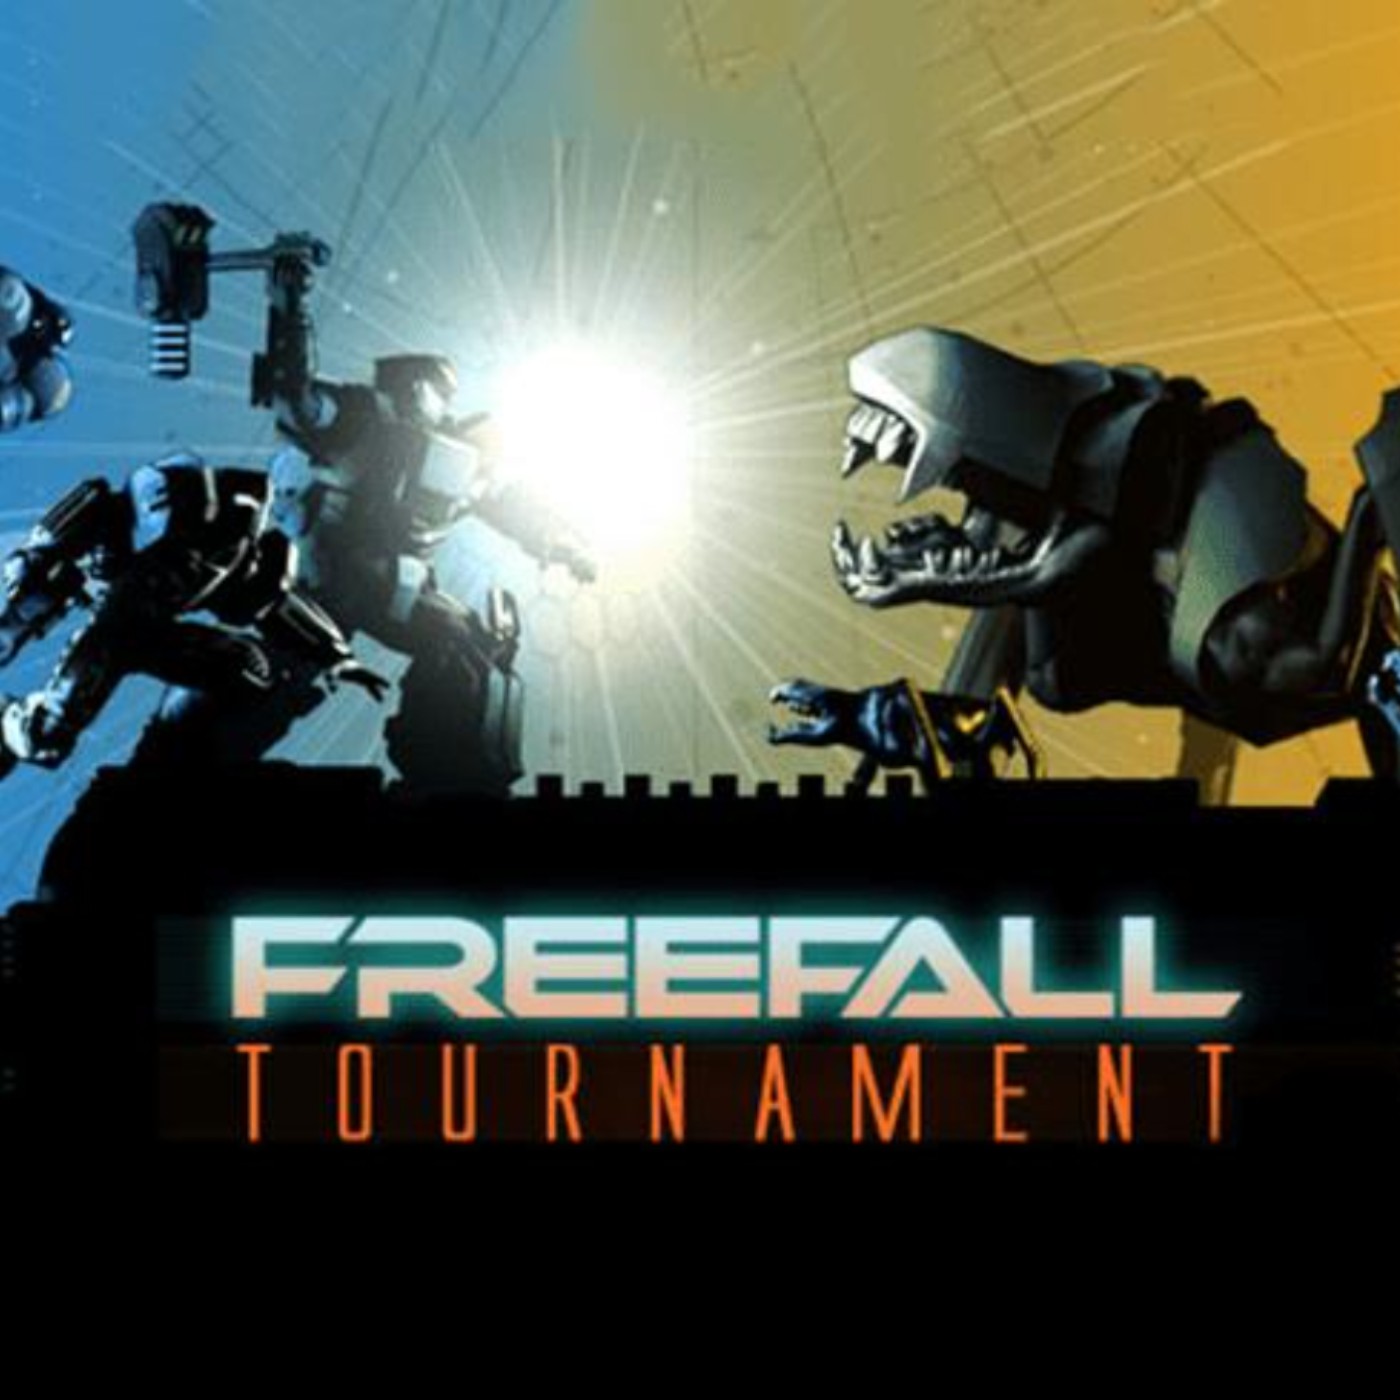 Freefall tournament